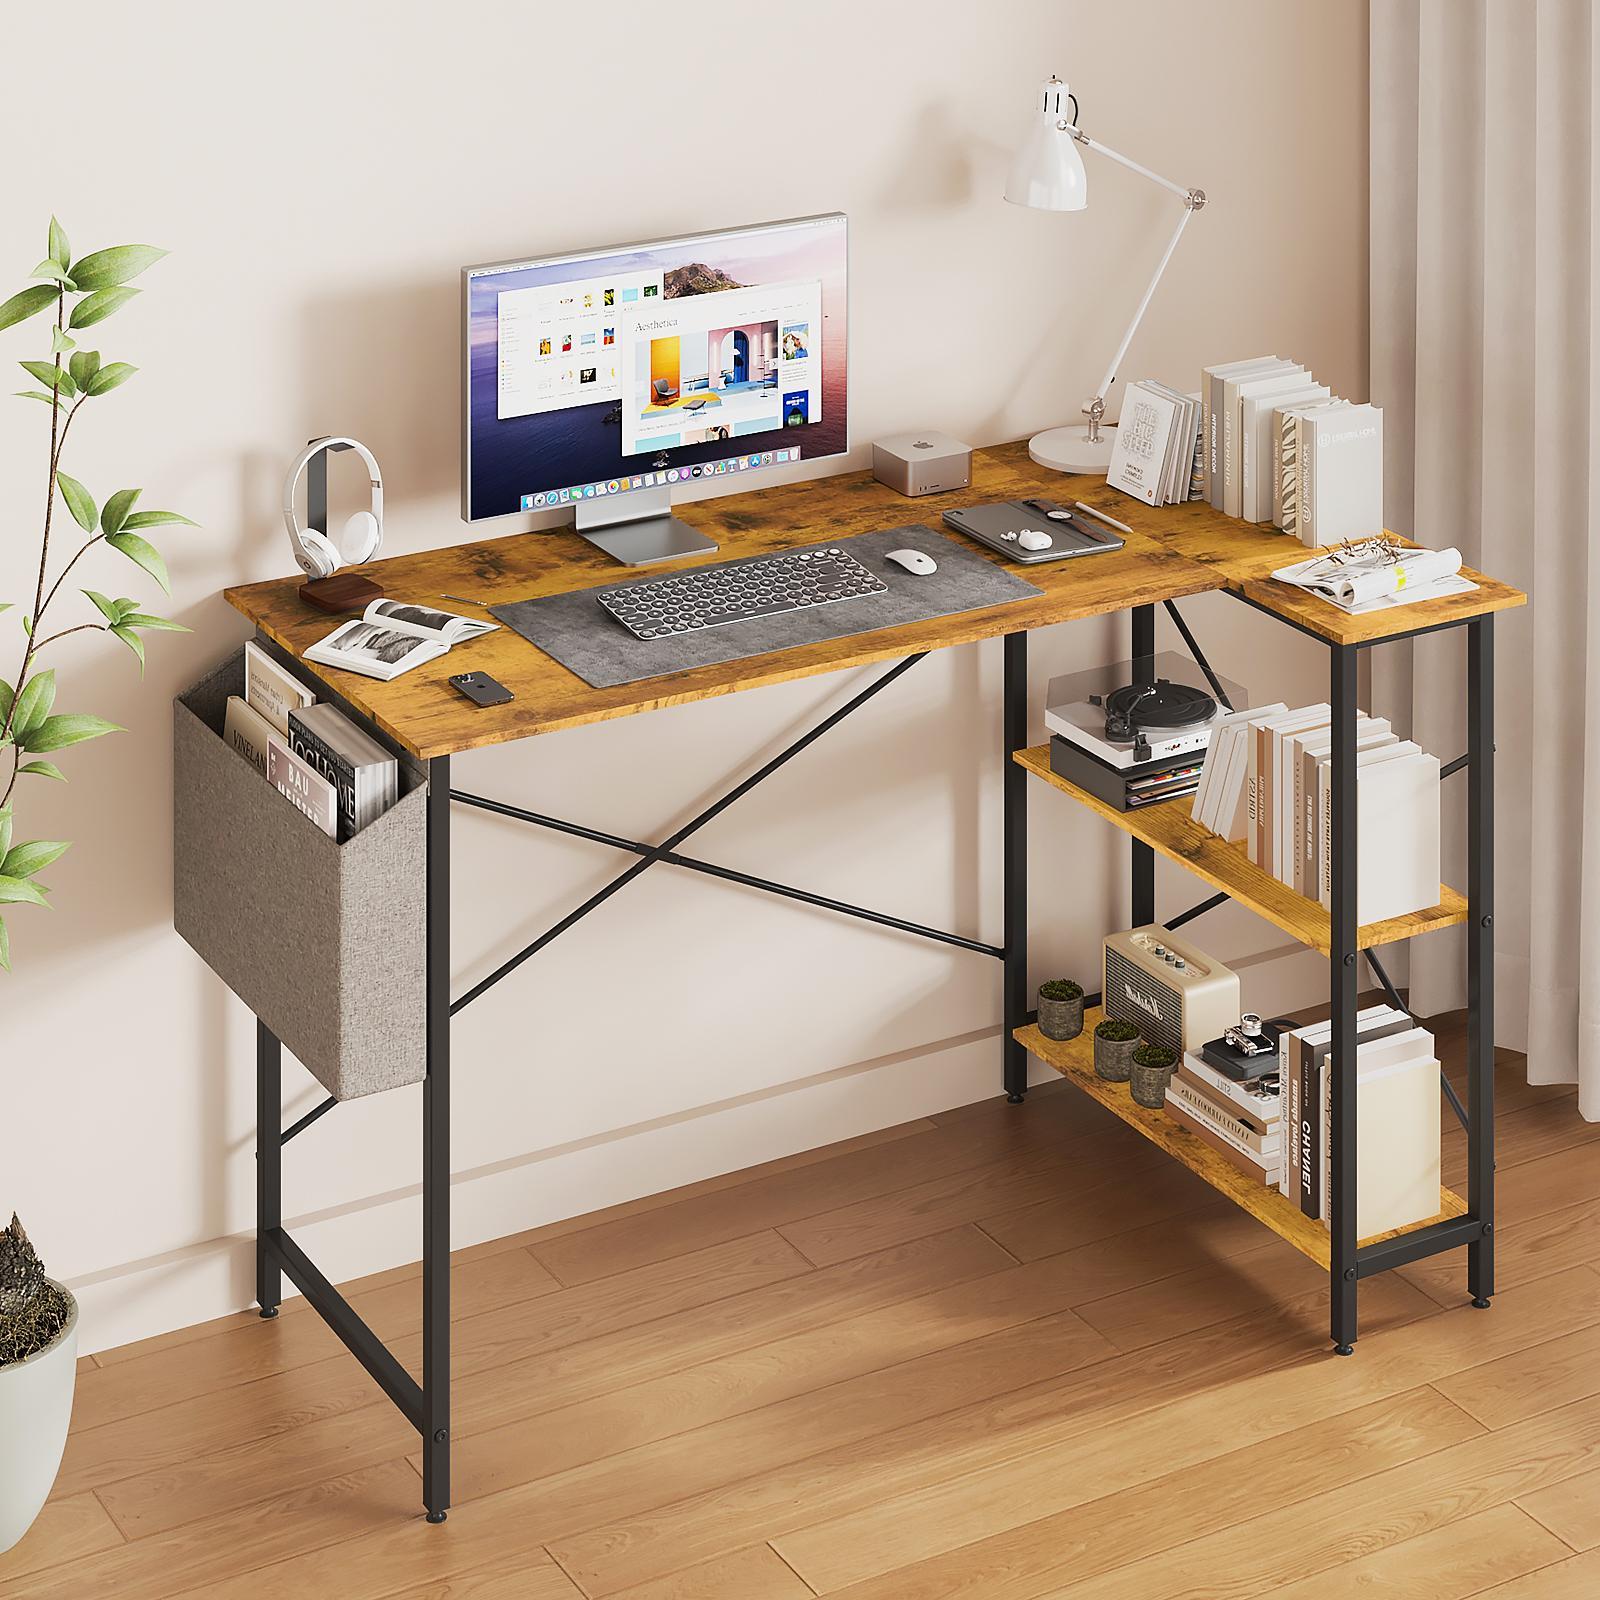 Advwin L Shaped Computer Desk with Storage Shelves Corner Desk Brown